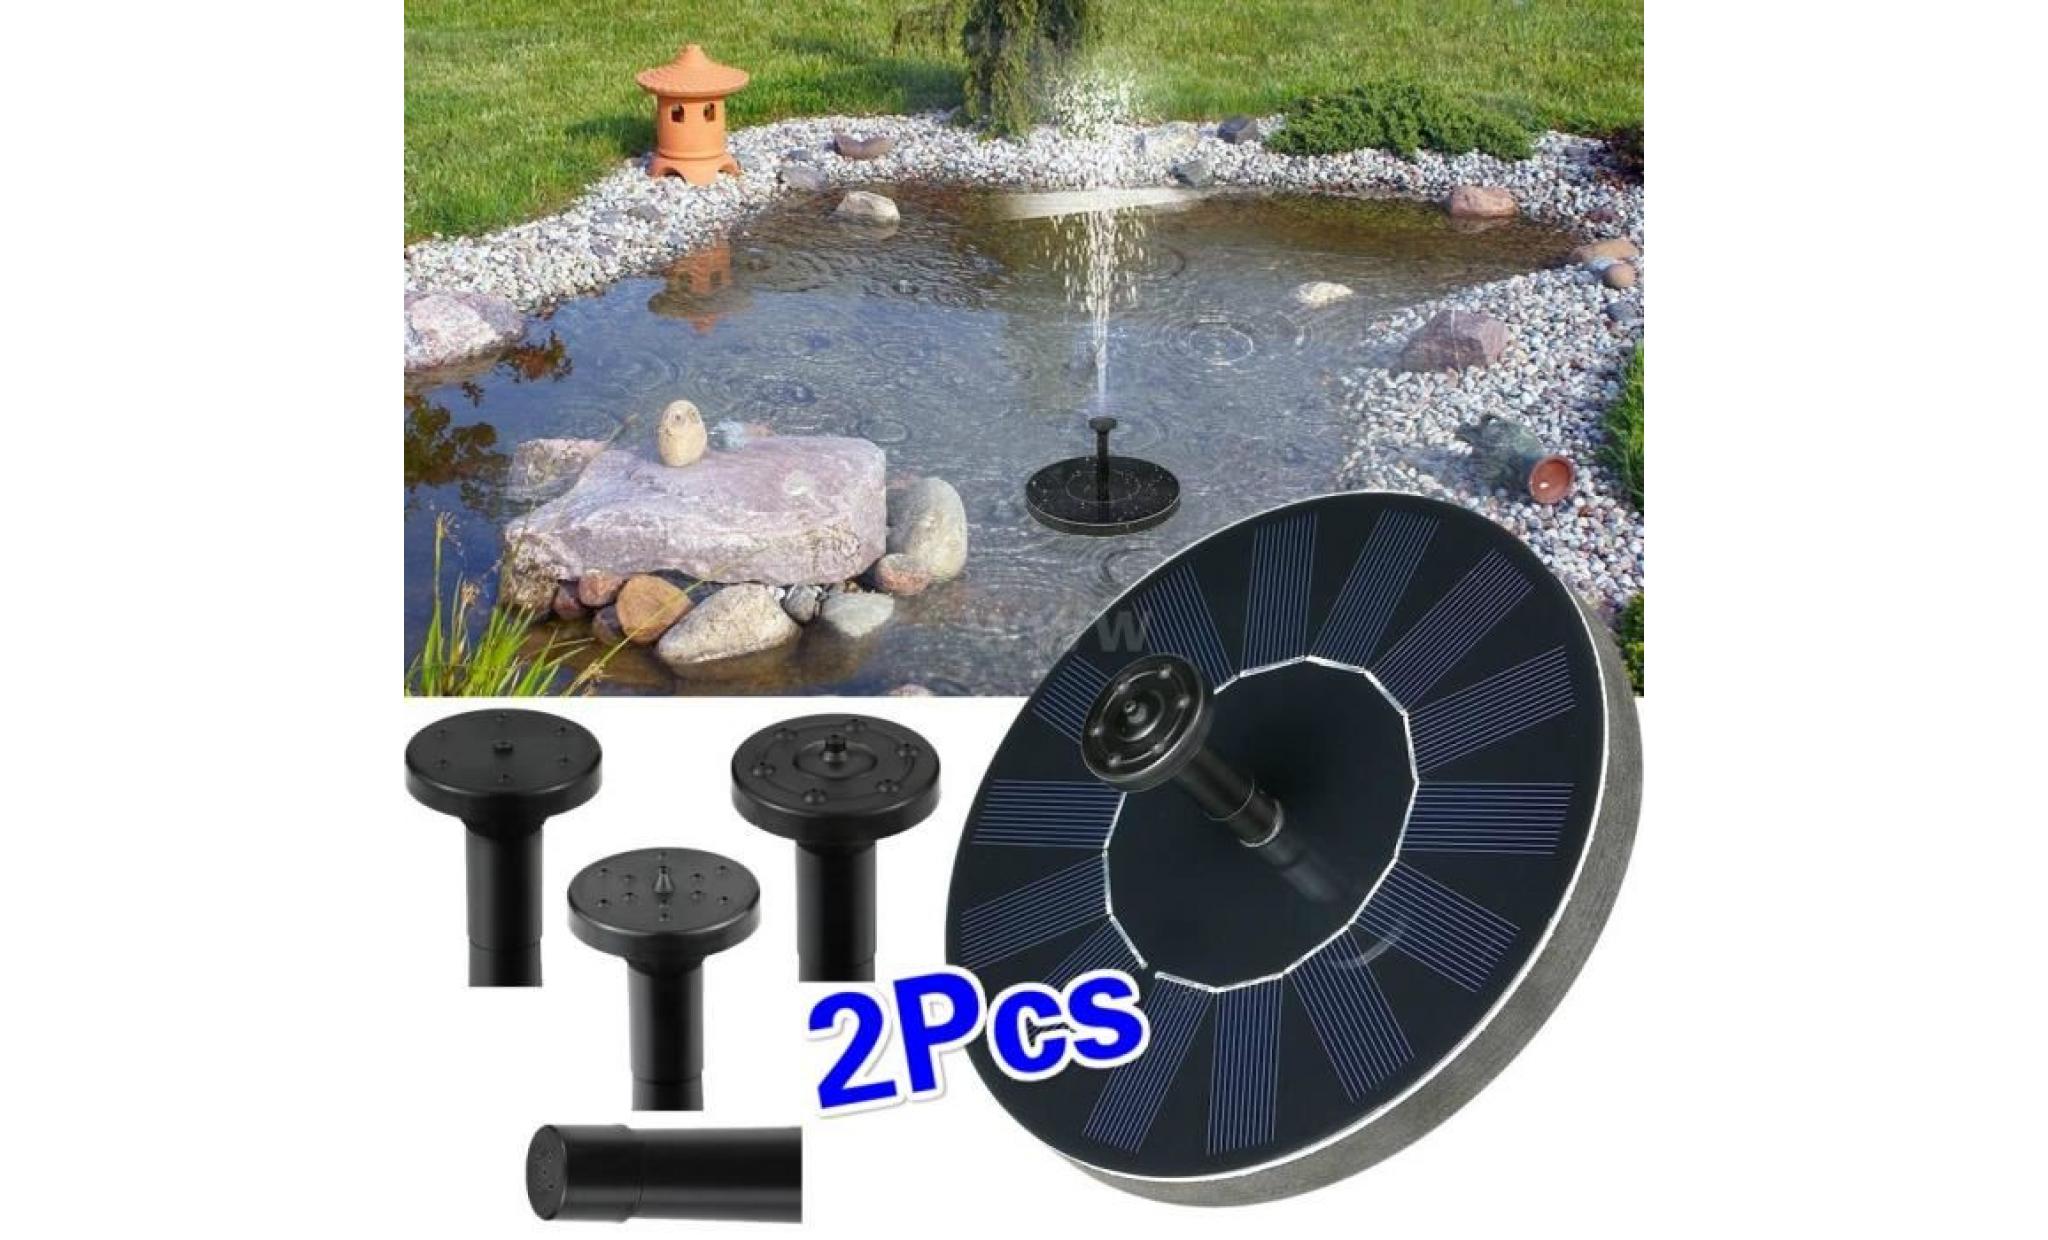 4 différents spray headssolar fountain pump. 1.5 w eau fontaine pompe kit pour bain d'oiseau, jardin, cour arrière et petit étang